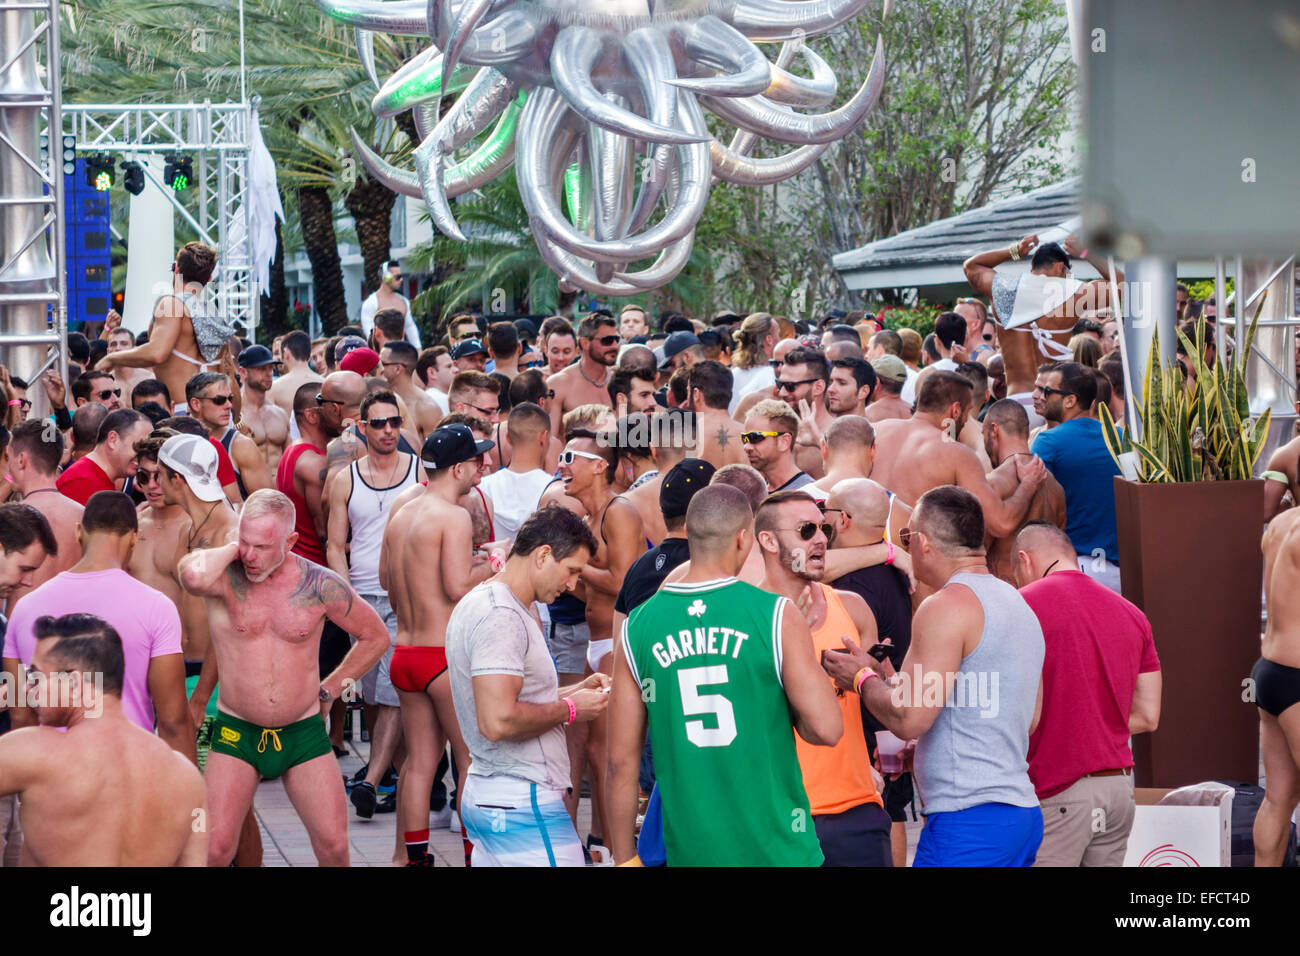 Miami Beach Florida,fête de piscine,tous les hommes,gay,homosexuel,style de vie,social,mix,FL141129005 Banque D'Images